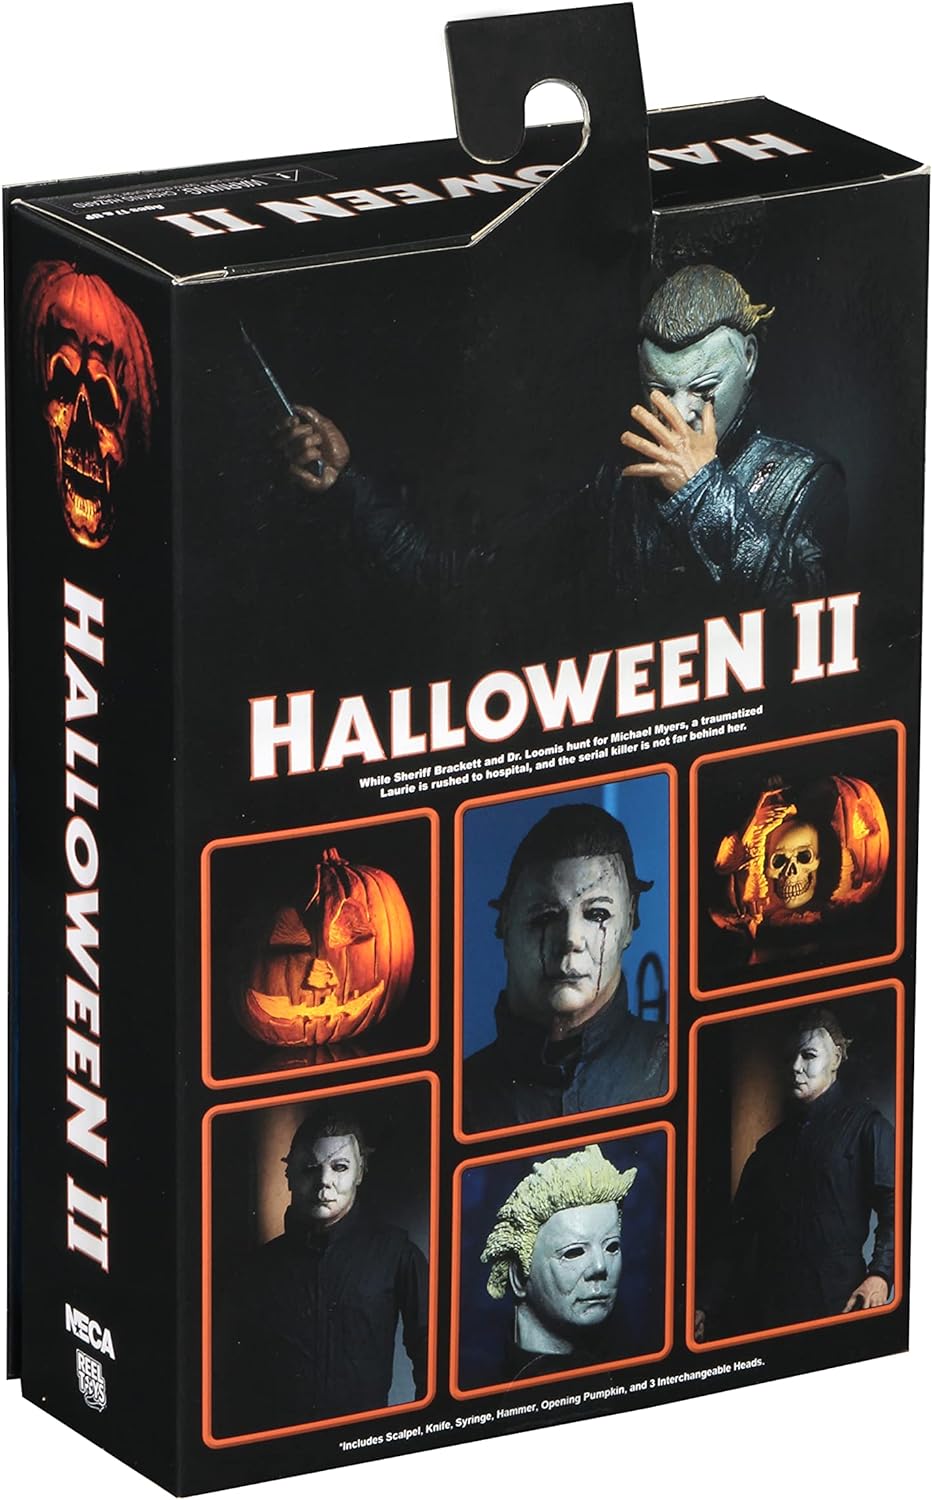 Michael Myers - Halloween II